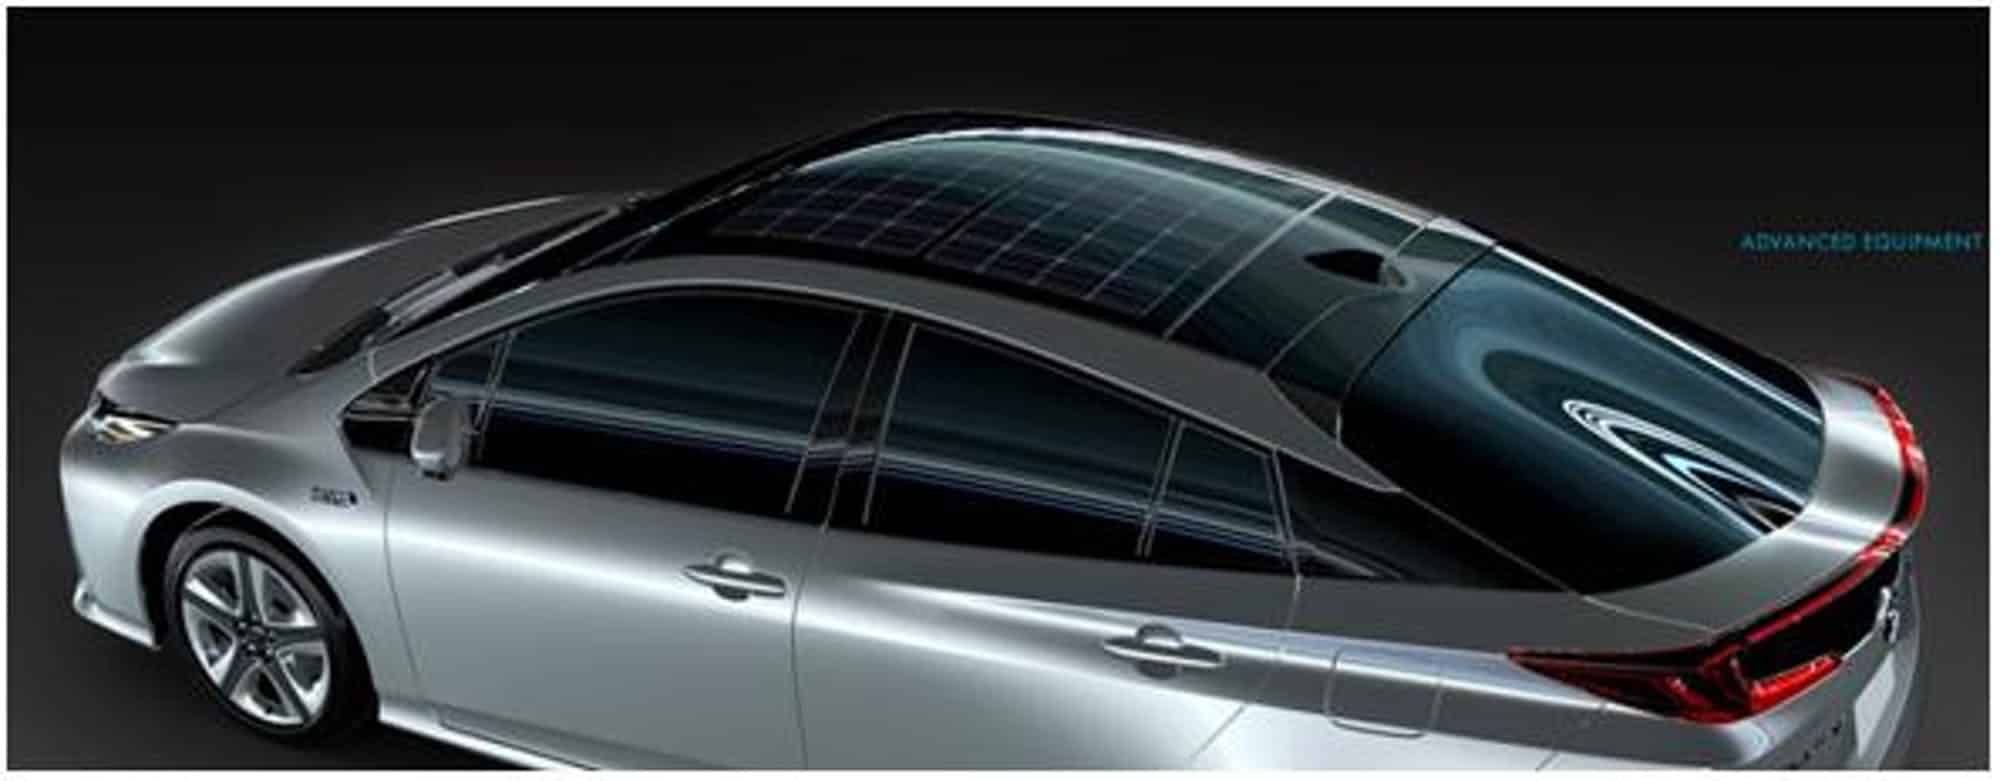 El Toyota Prius ahora con un techo solar fotovoltaico firmado por Panasonic